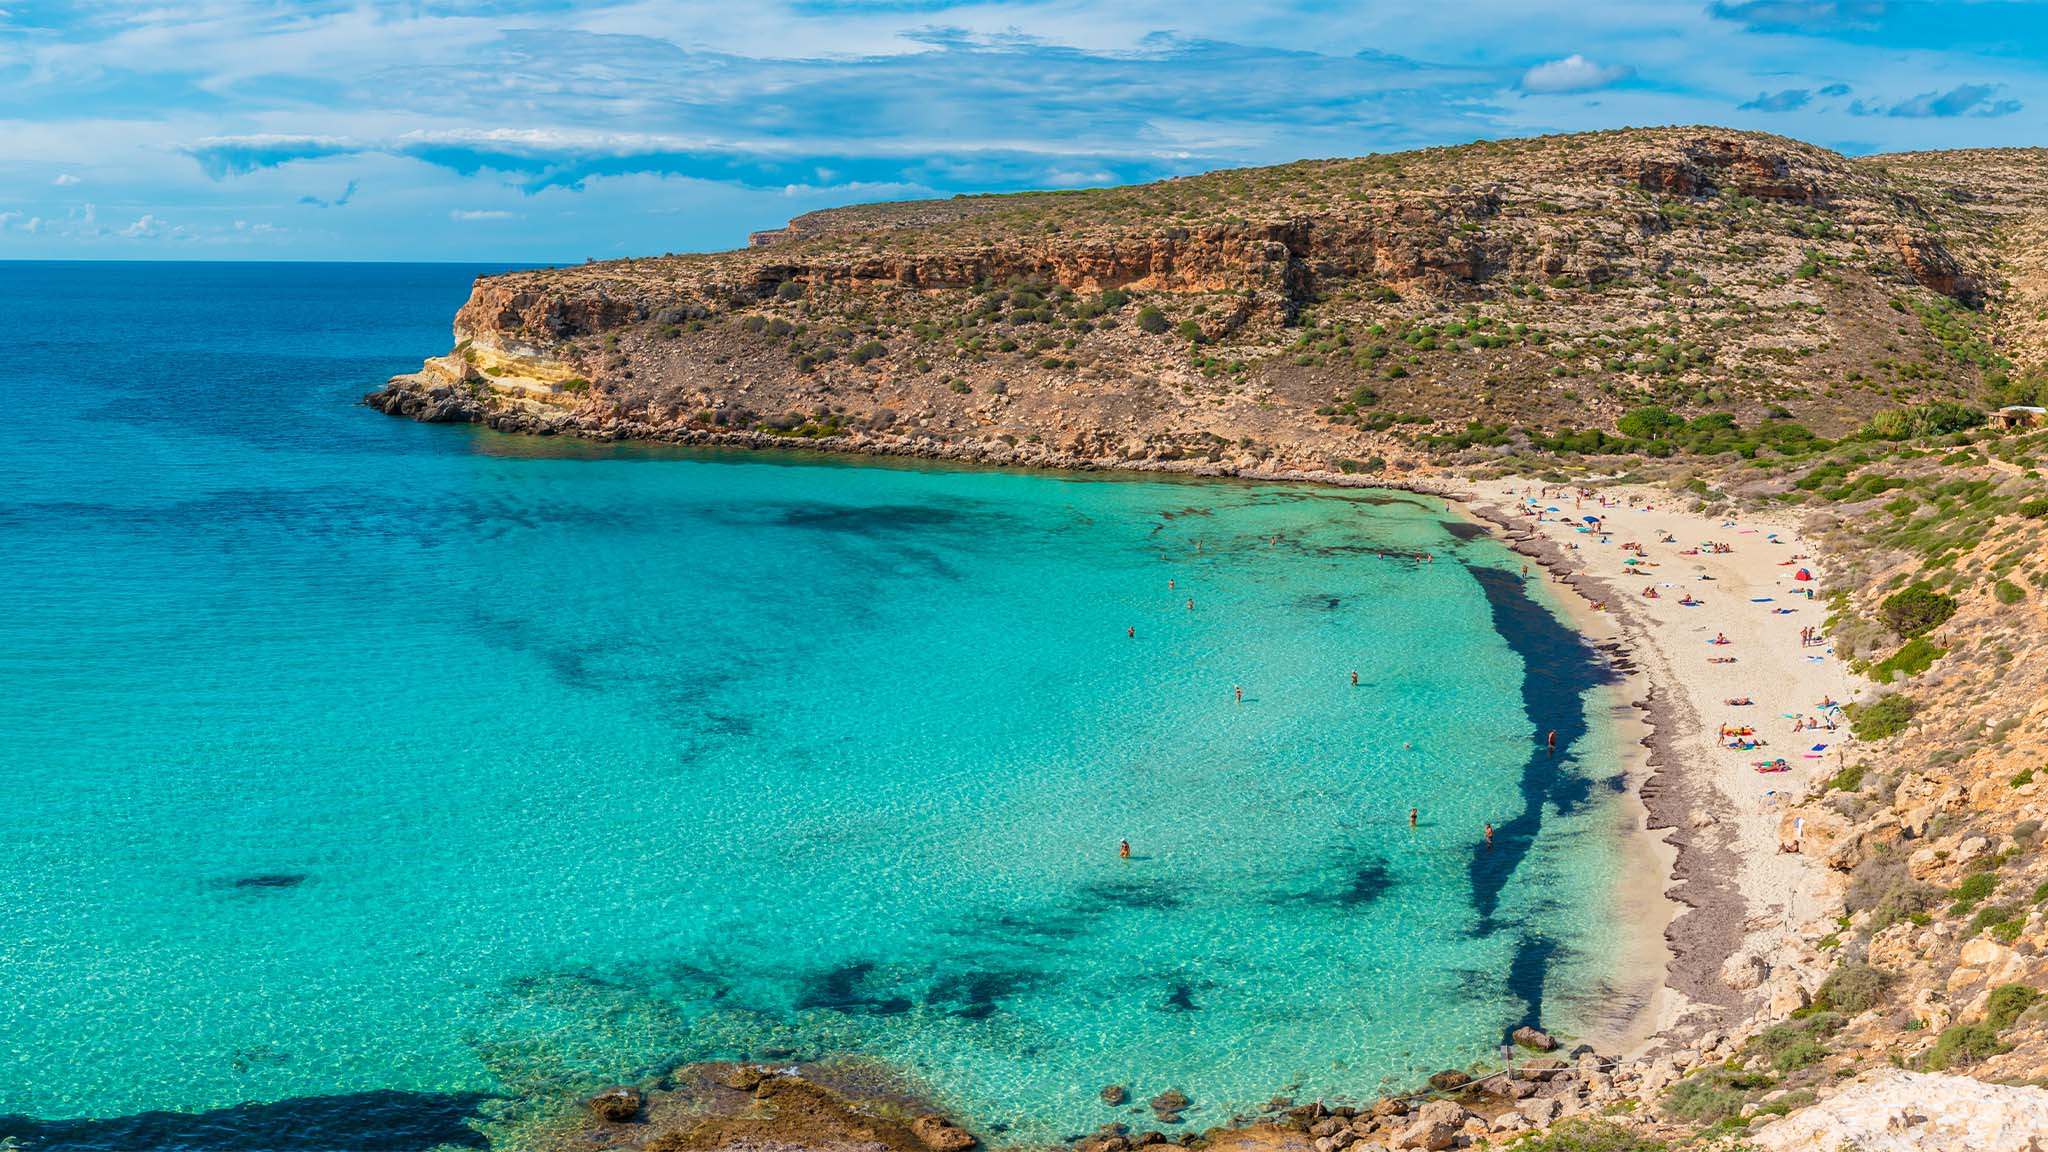 Scopri di più sull'articolo La Spiaggia dei Conigli di Lampedusa è la spiaggia più bella d’Europa